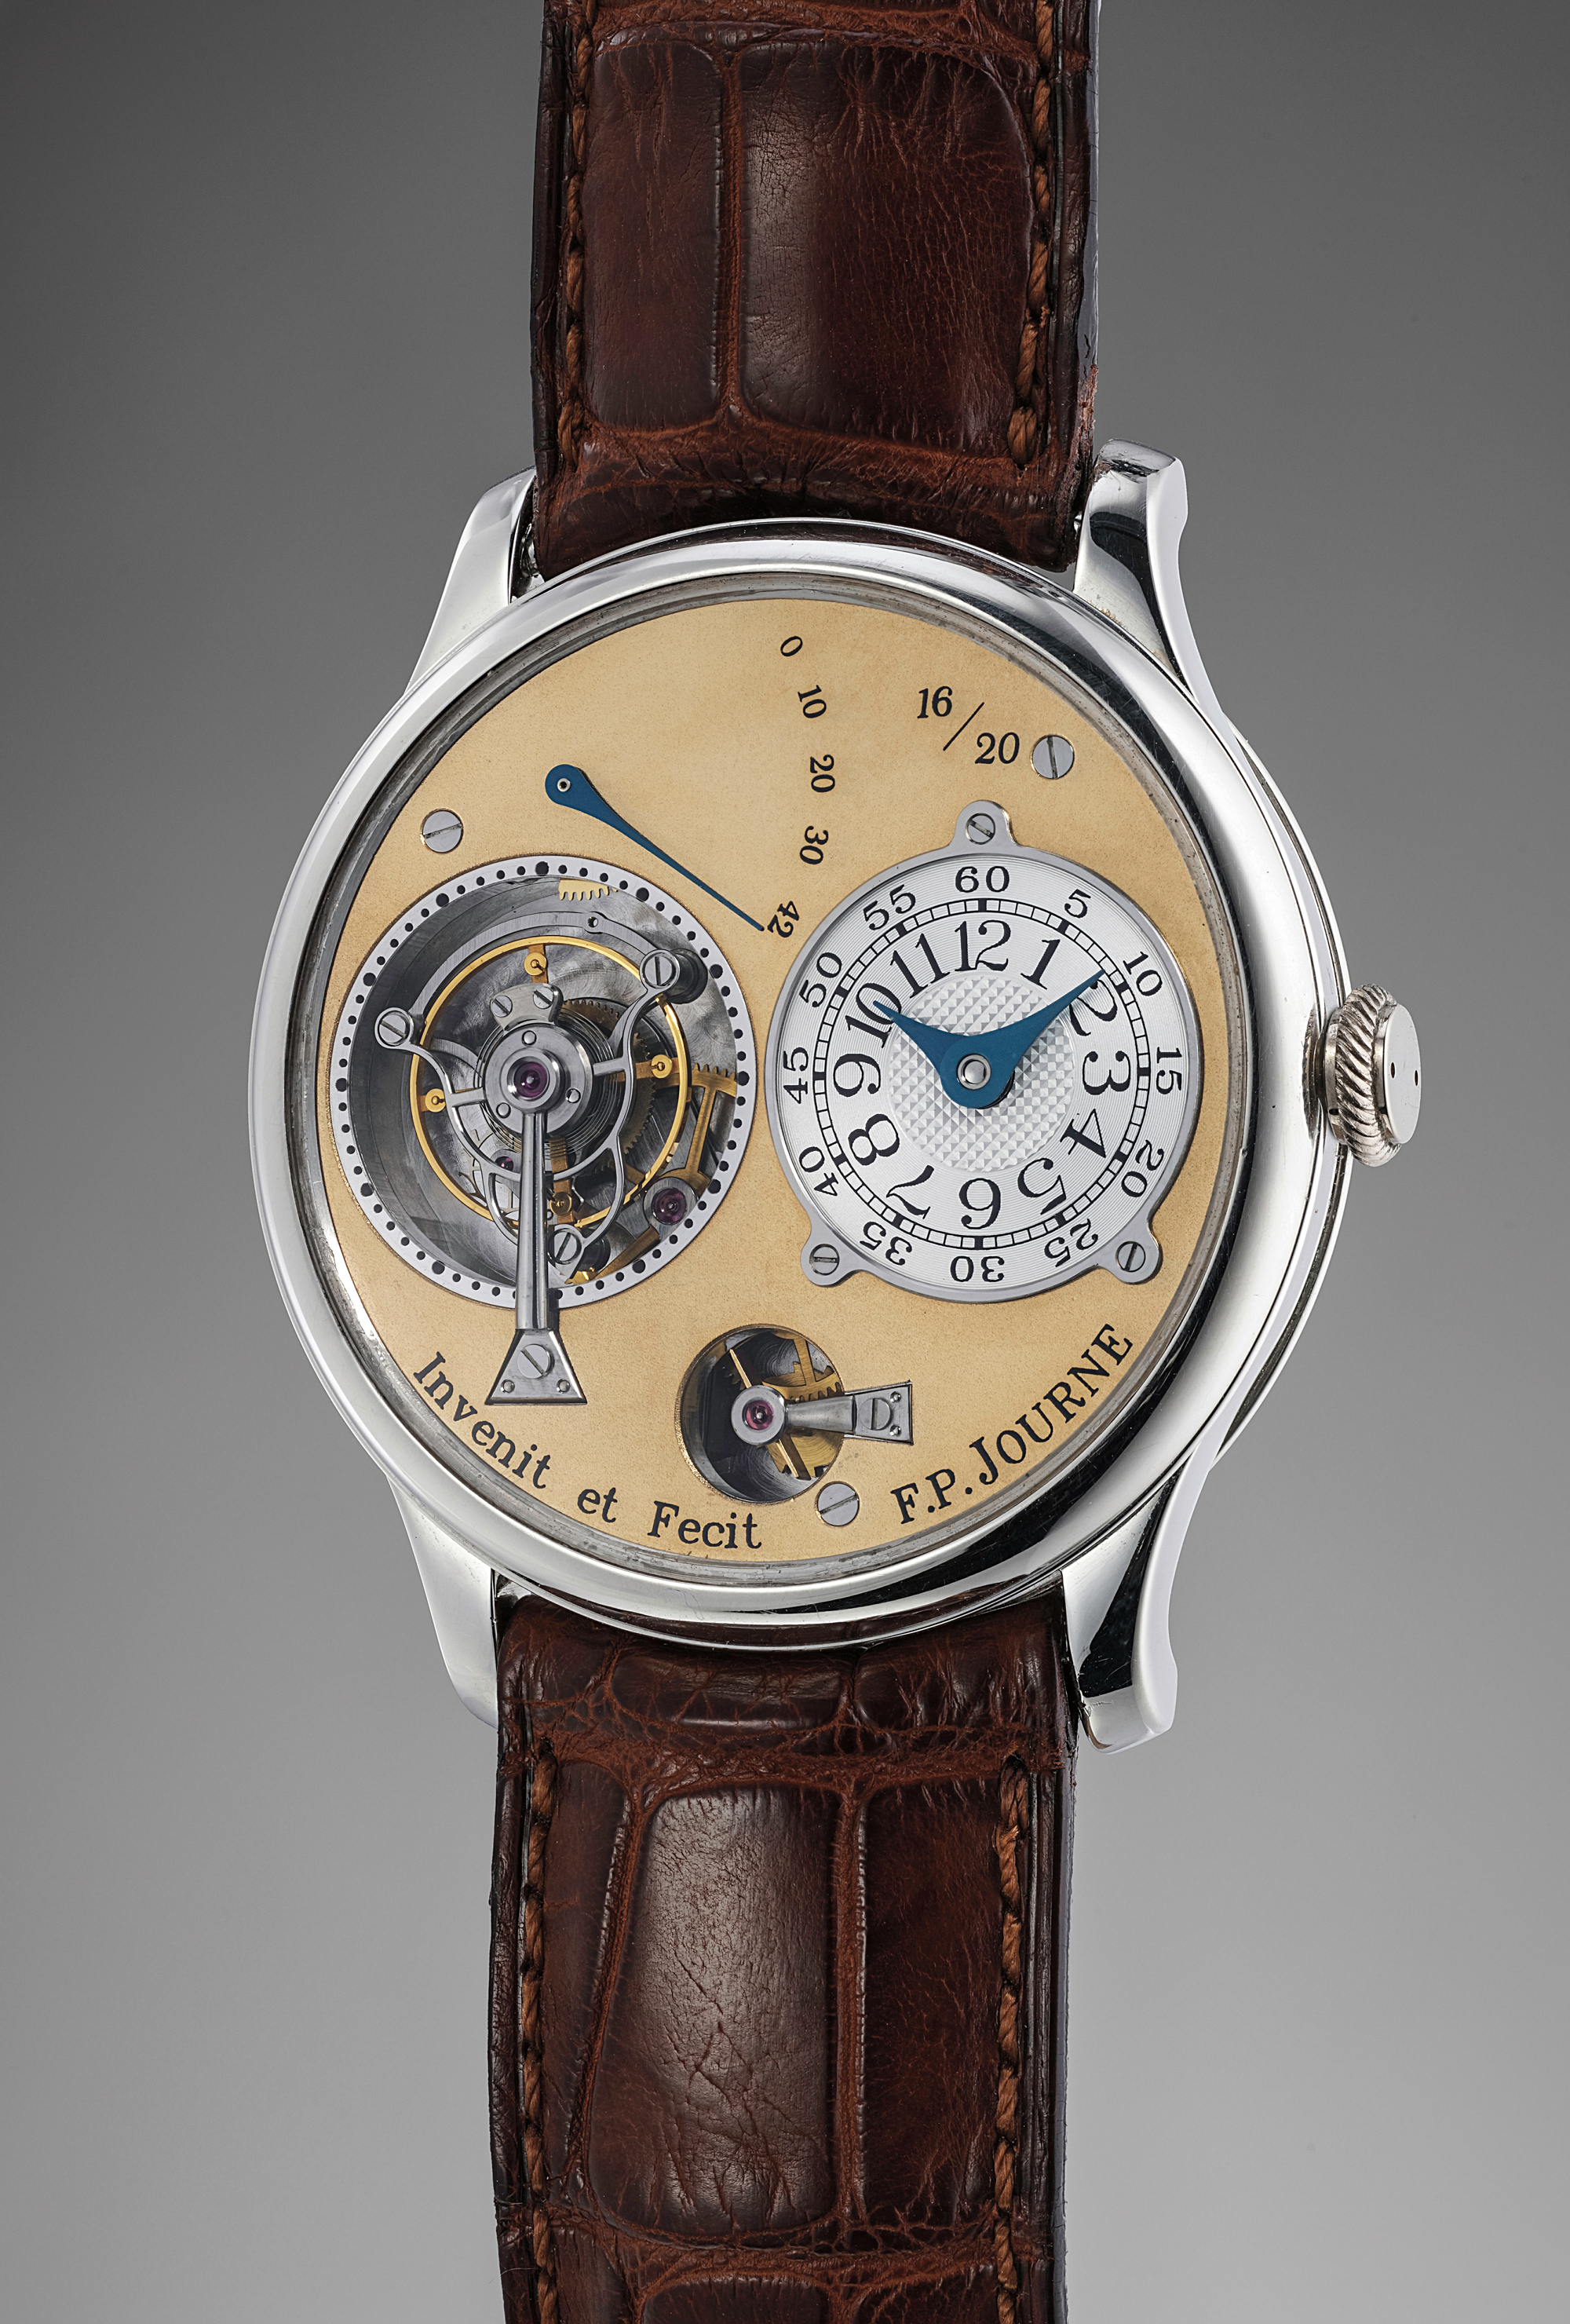 Limited edition platinum tourbillon souscription wristwatch with remontoire.